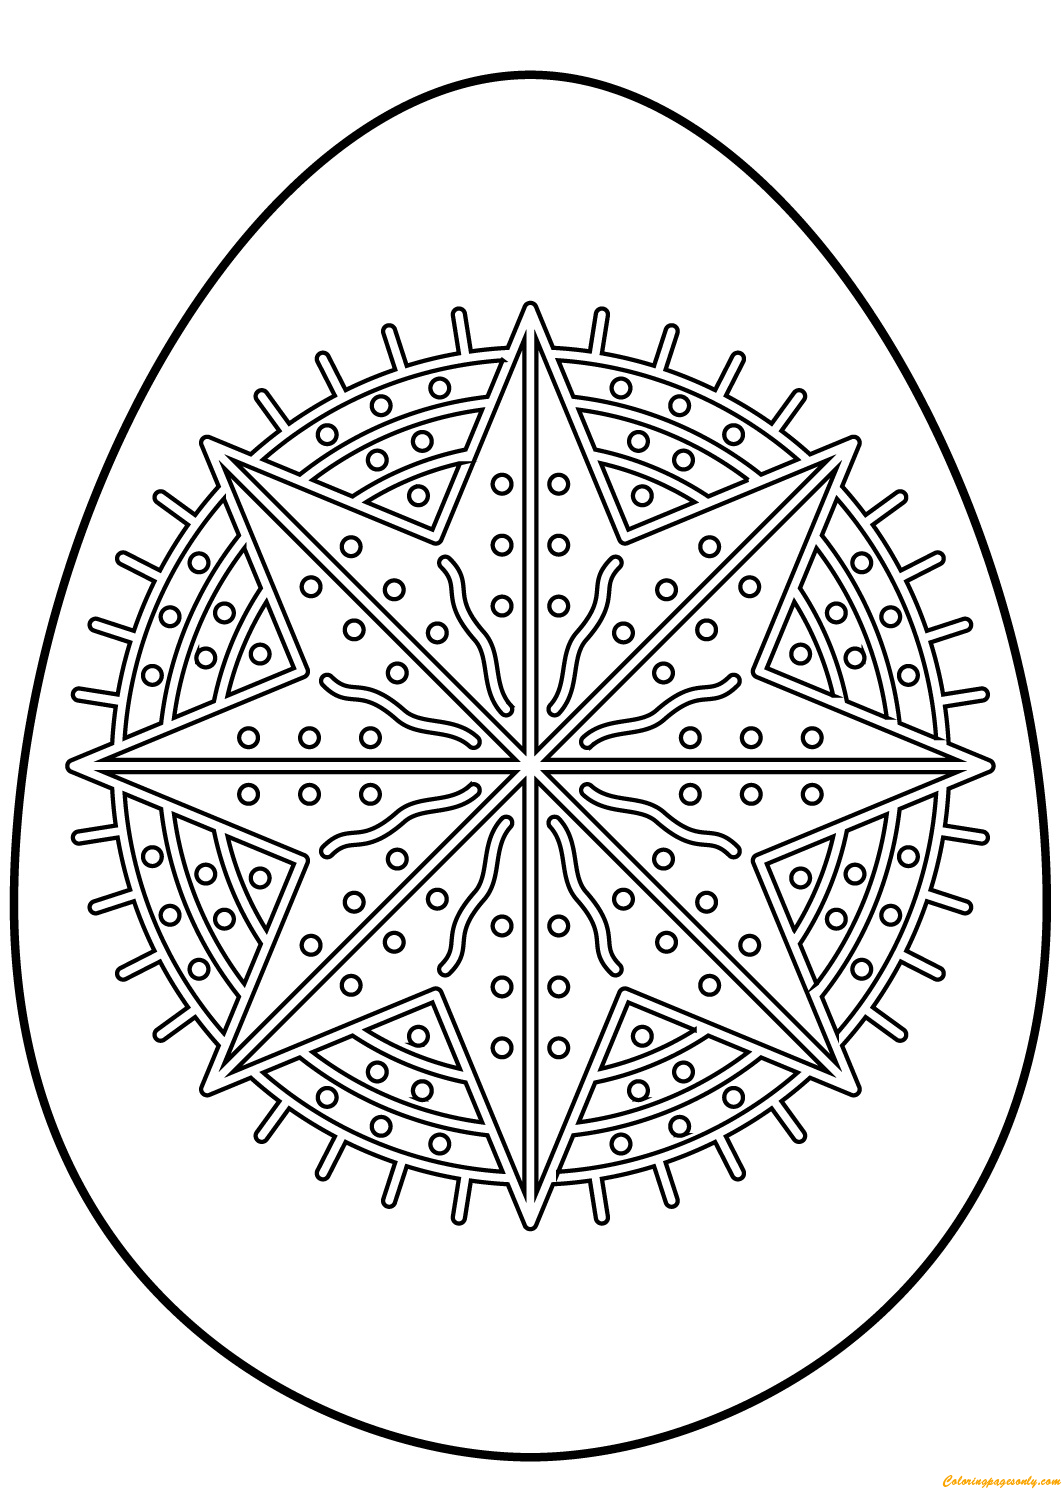 Oeuf de Pâques avec motif étoile octagramme d'oeufs de Pâques